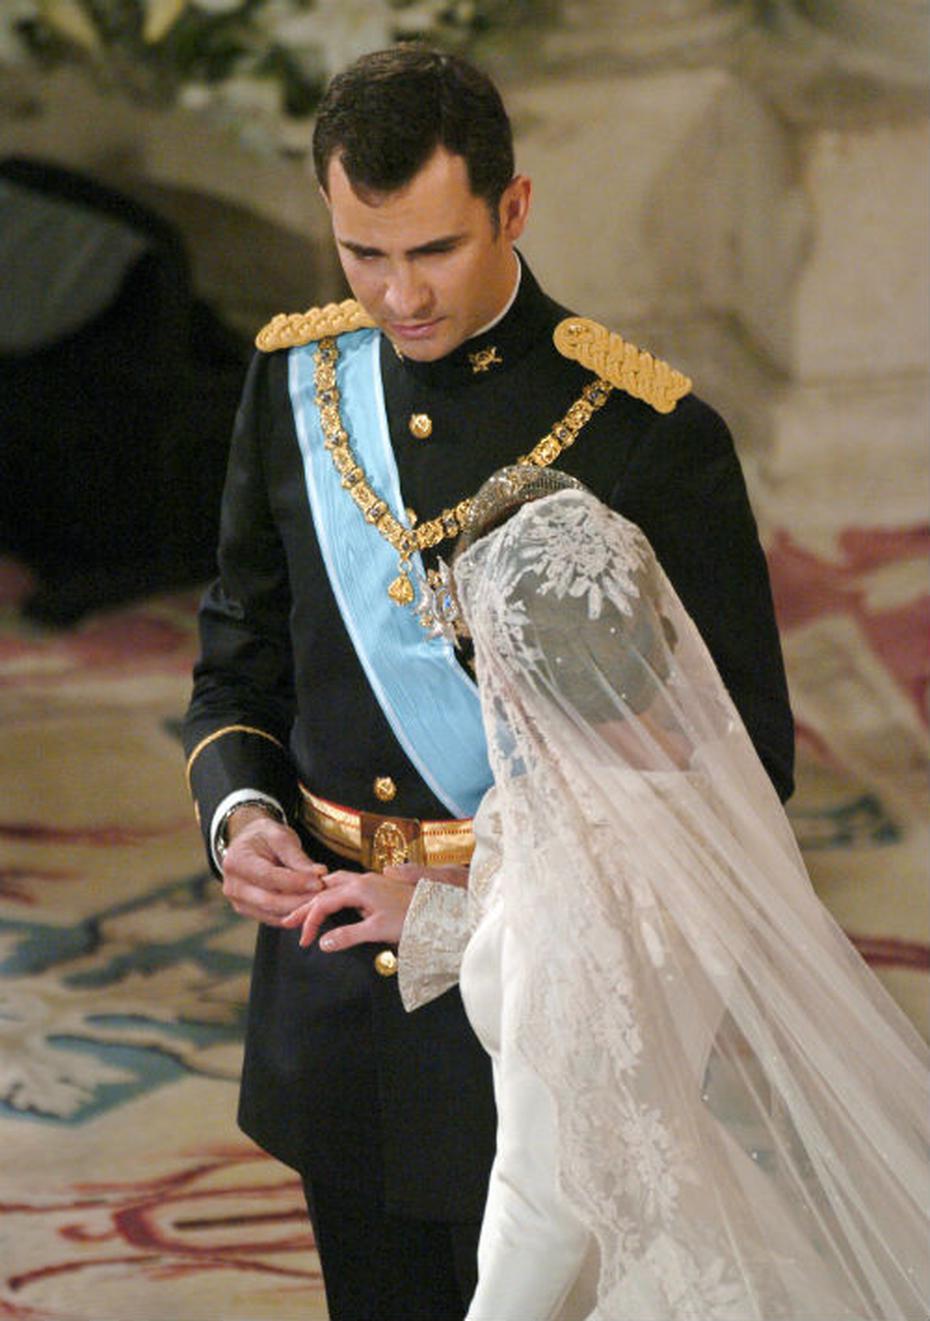 El día de su boda: El Príncipe Felipe coloca el anillo en el anular de la mano derecha de Letizia Ortiz convertidos ya oficialmente en Príncipes de Asturias tras expresar su compromiso en la Catedral de La Almudena el 22 de mayo de 2004. (Foto: Archivo)